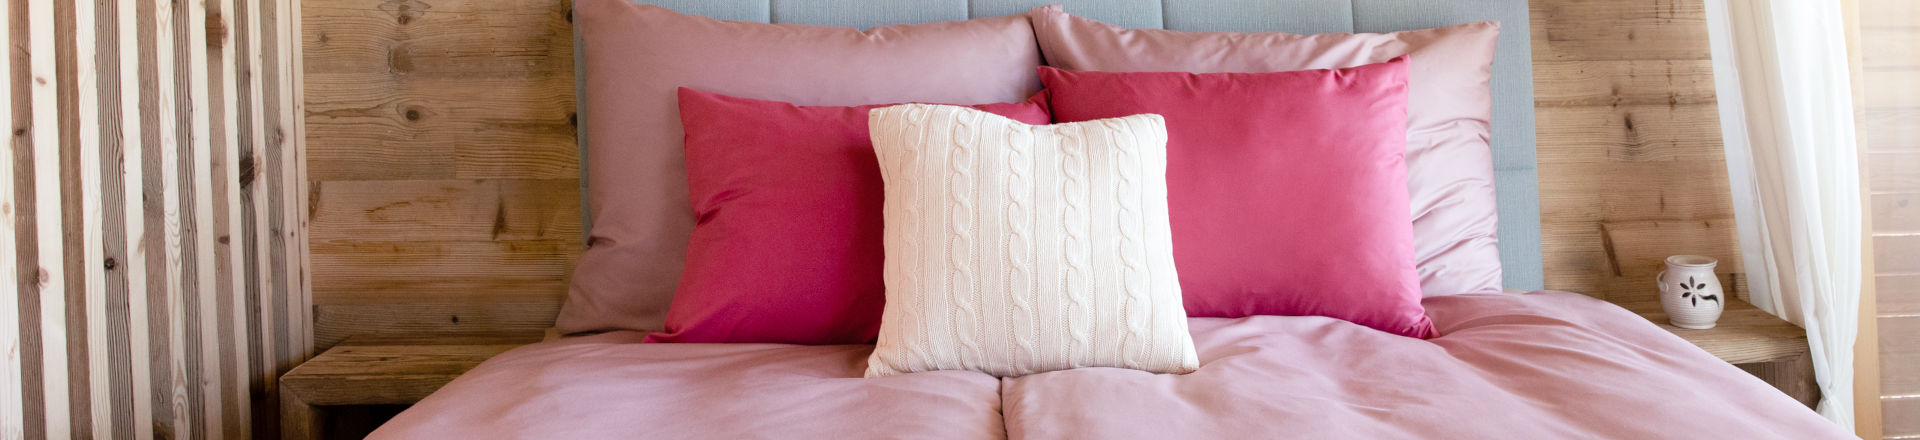 Jak vypadá ustlaná postel s produkty od SCANquilt, růžové povlečení a pletené povlaky.